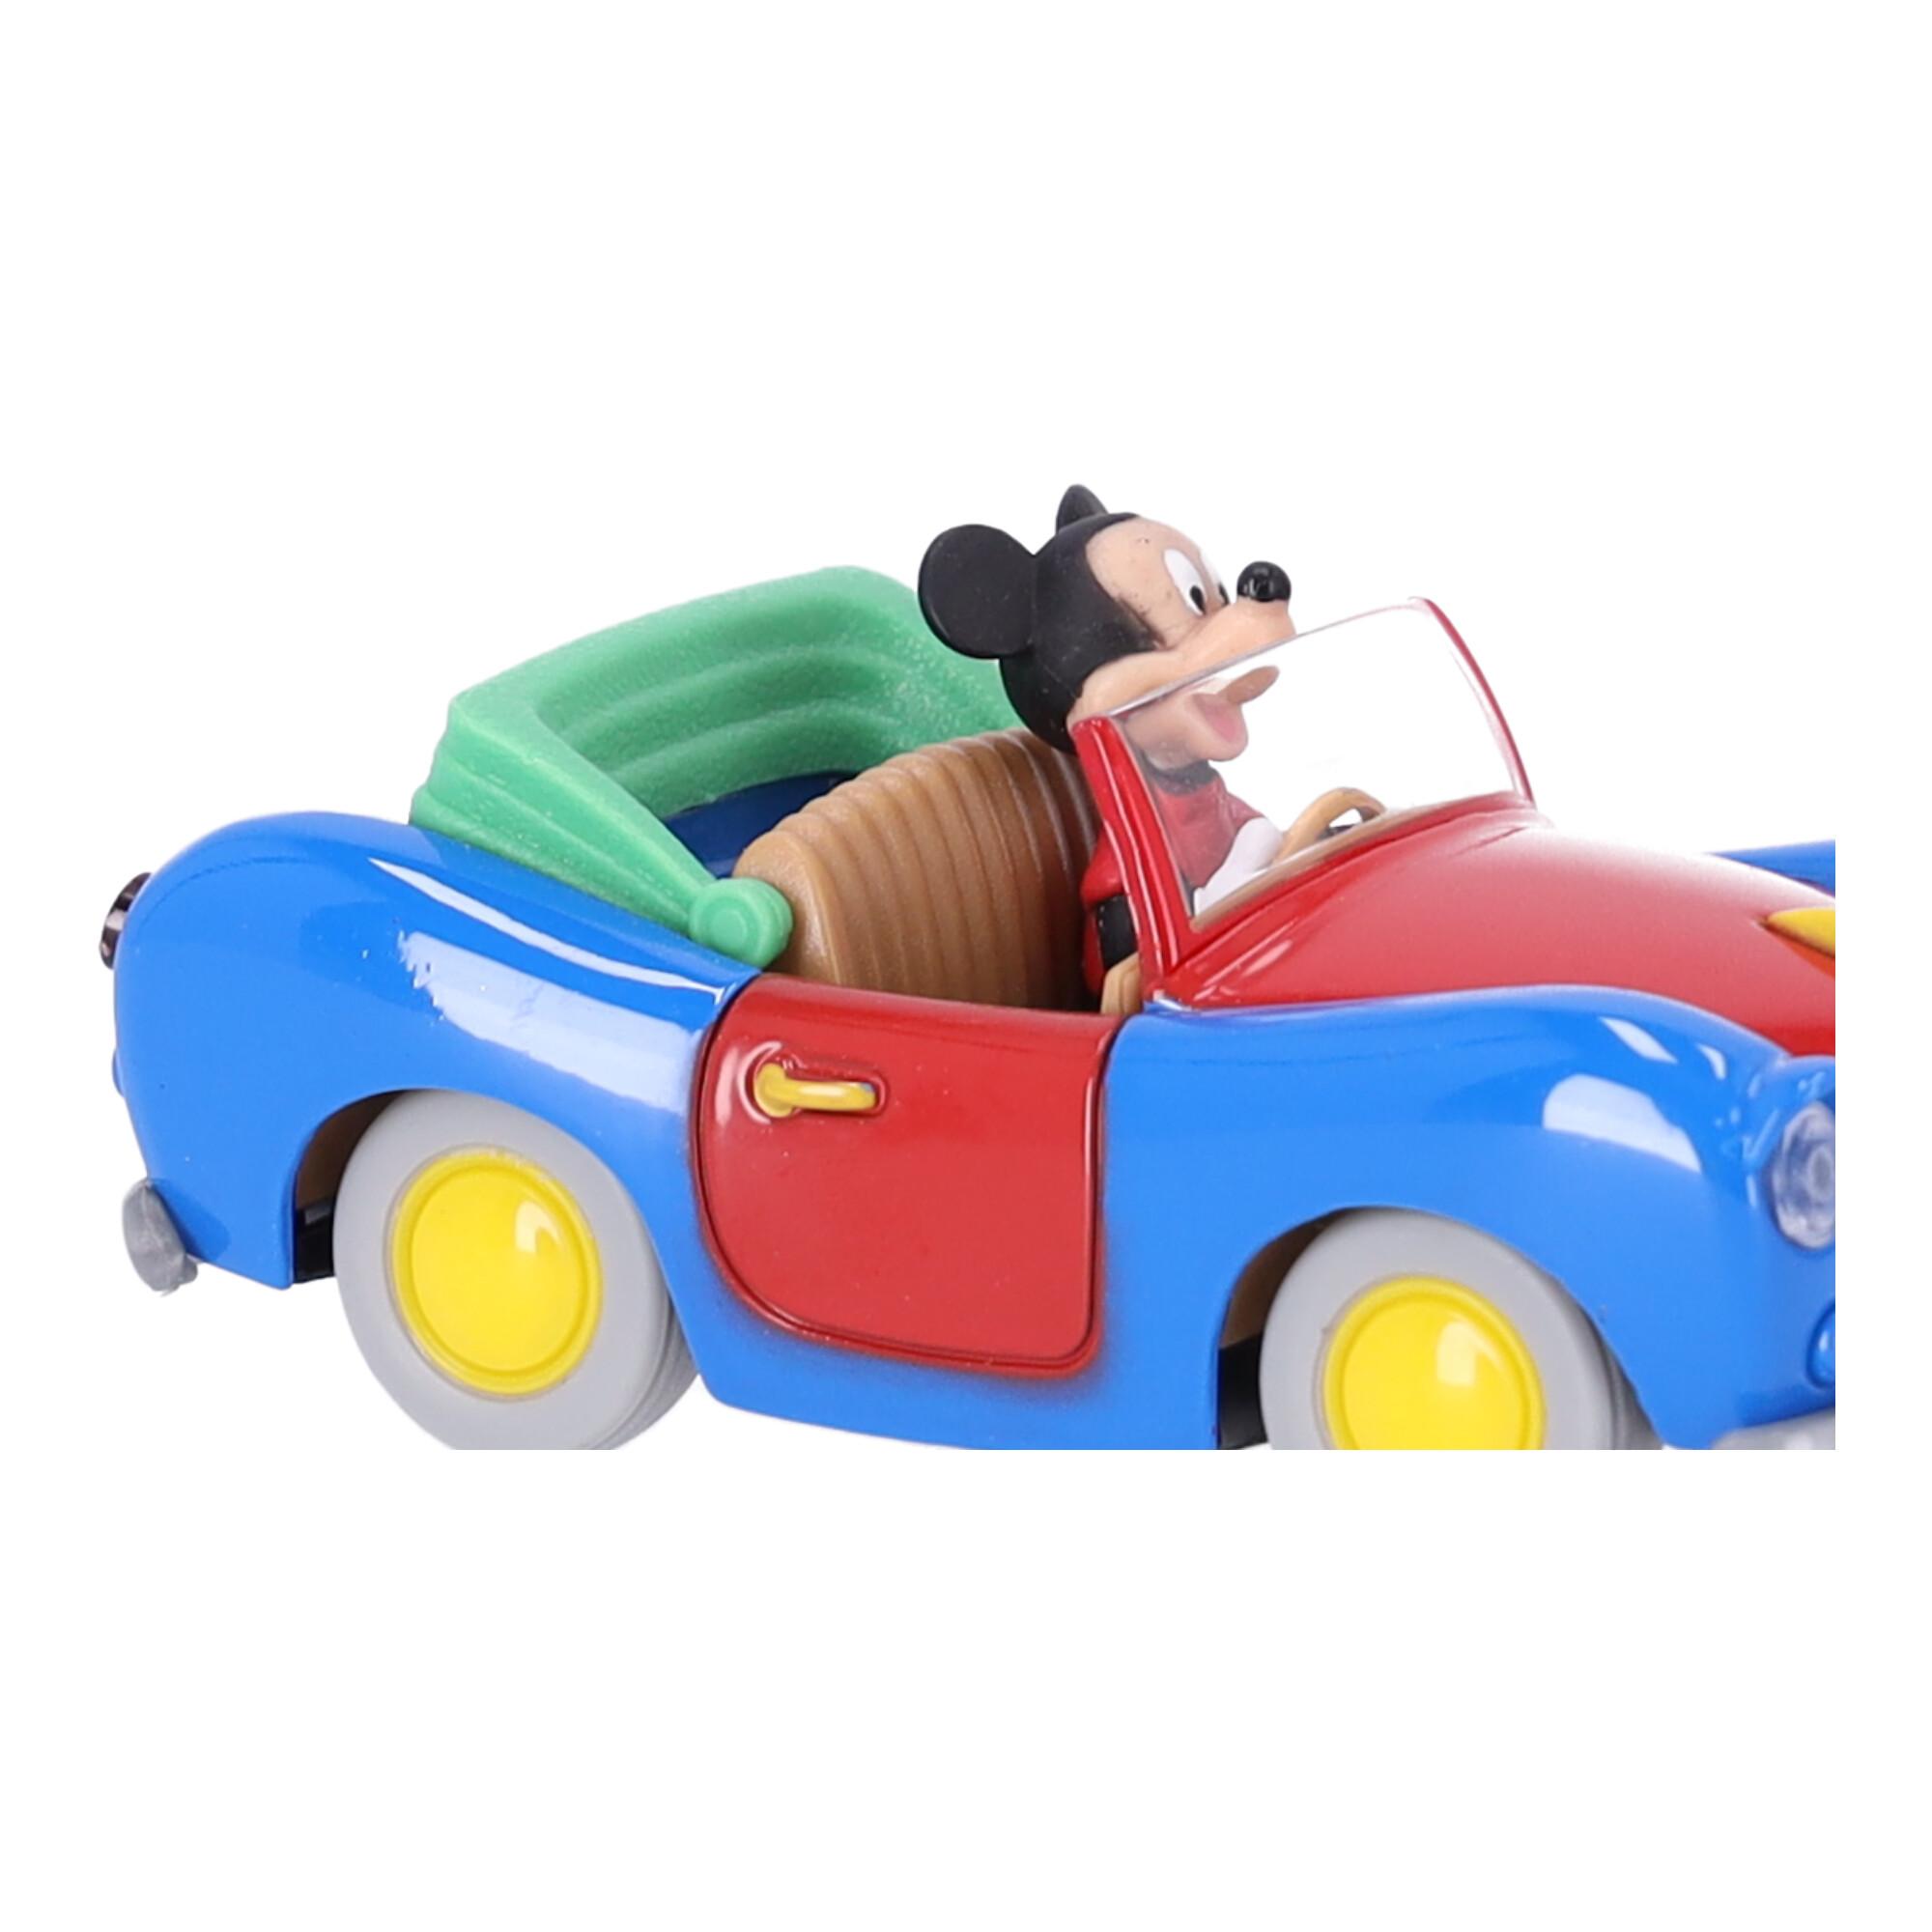 Auto Disney in 1:43 scale - Mickey